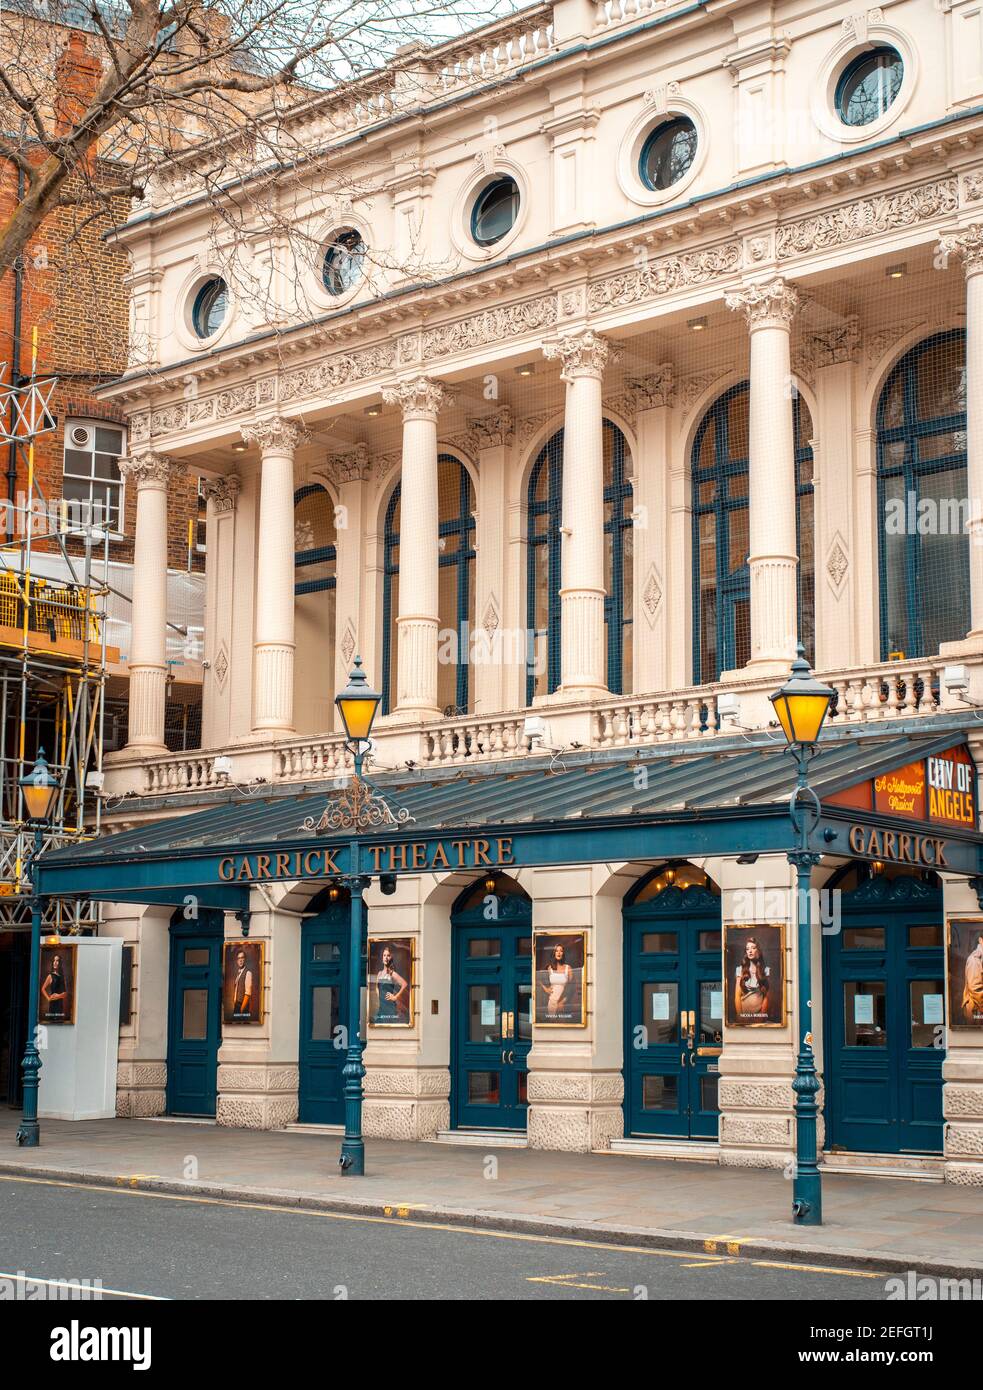 Londra, Inghilterra - 17 marzo 2020: Il Teatro Garrick che mostra la 'Citta' degli Angeli' nel West End di Londra e' chiuso fino a preavviso a causa dell'epidemia di Coronavirus Foto Stock